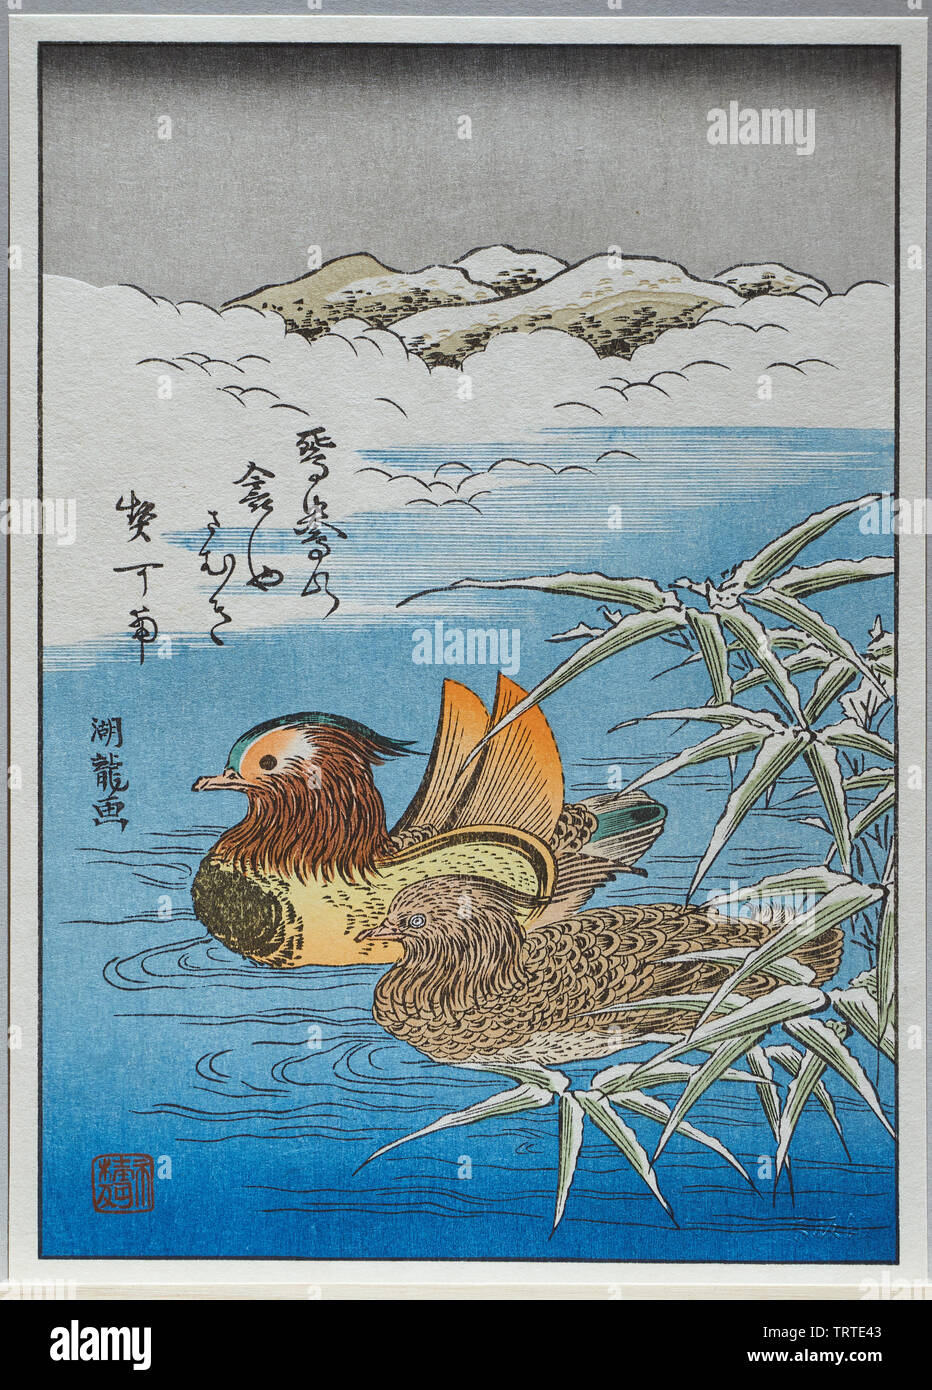 Impression moderne de canards mandarins estampe ukiyoe japonais, par Isoda Koryusai, sculptée par David Bull, et imprimé par Mokuhankan personnel. Banque D'Images